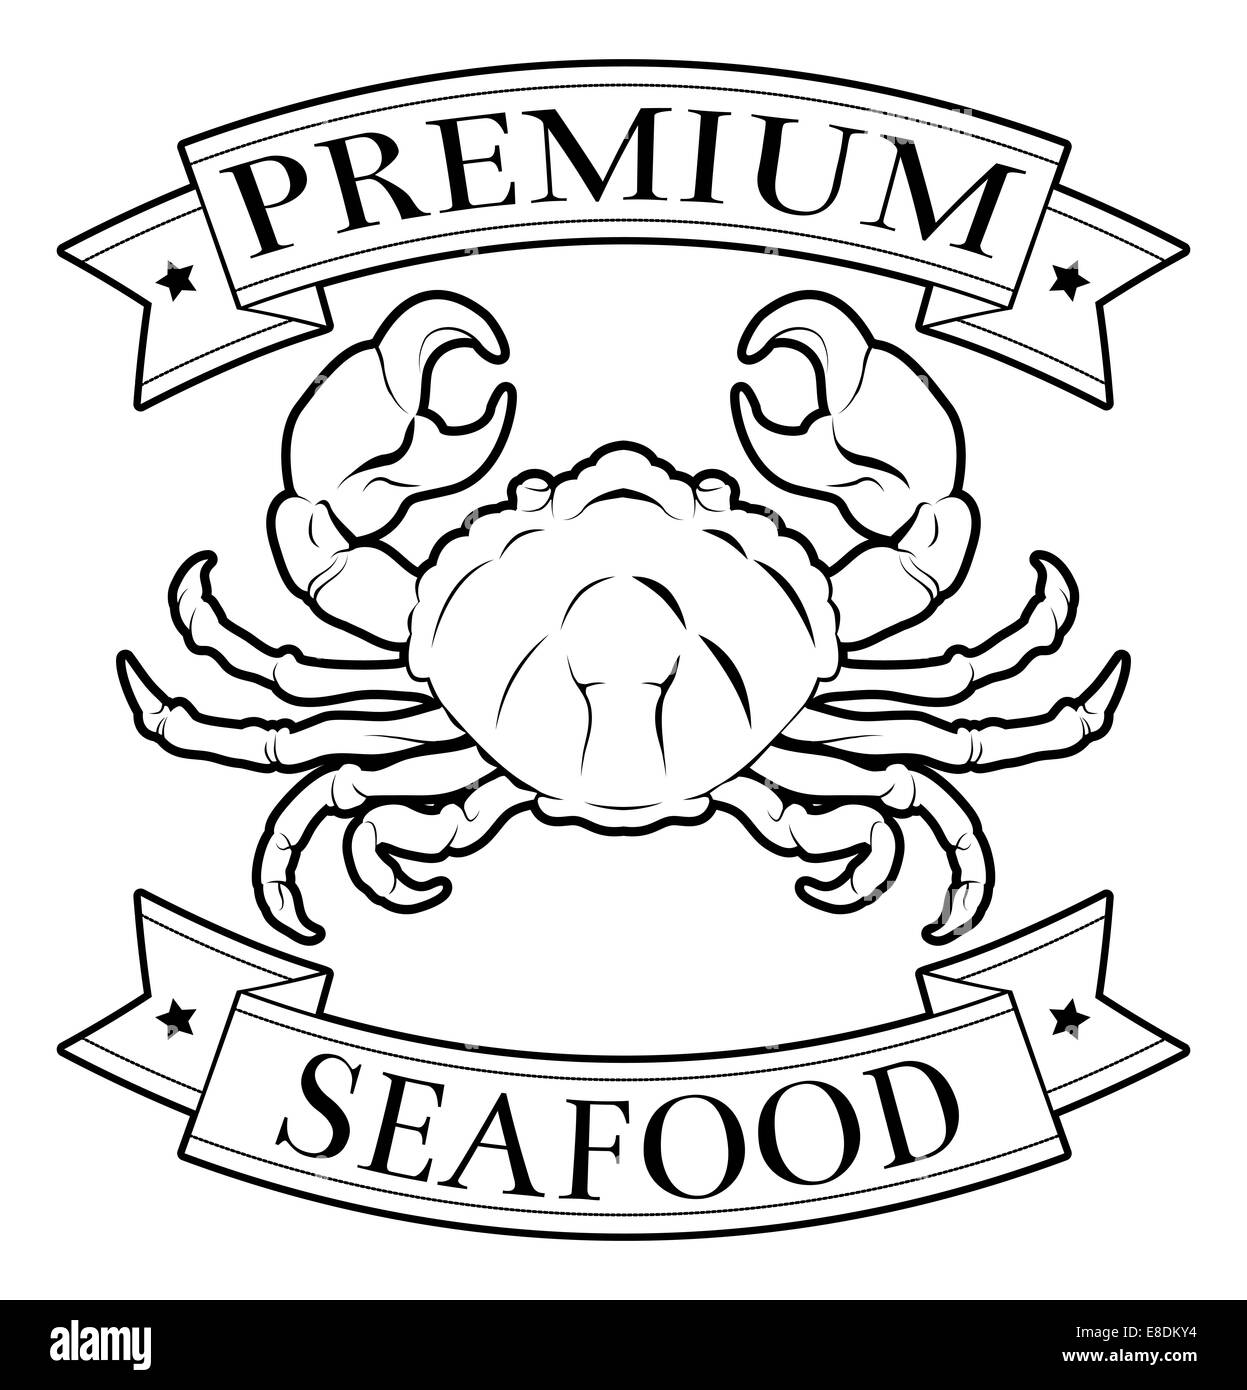 Frutti di mare Premium etichetta alimentare con una illustrazione di un granchio Foto Stock